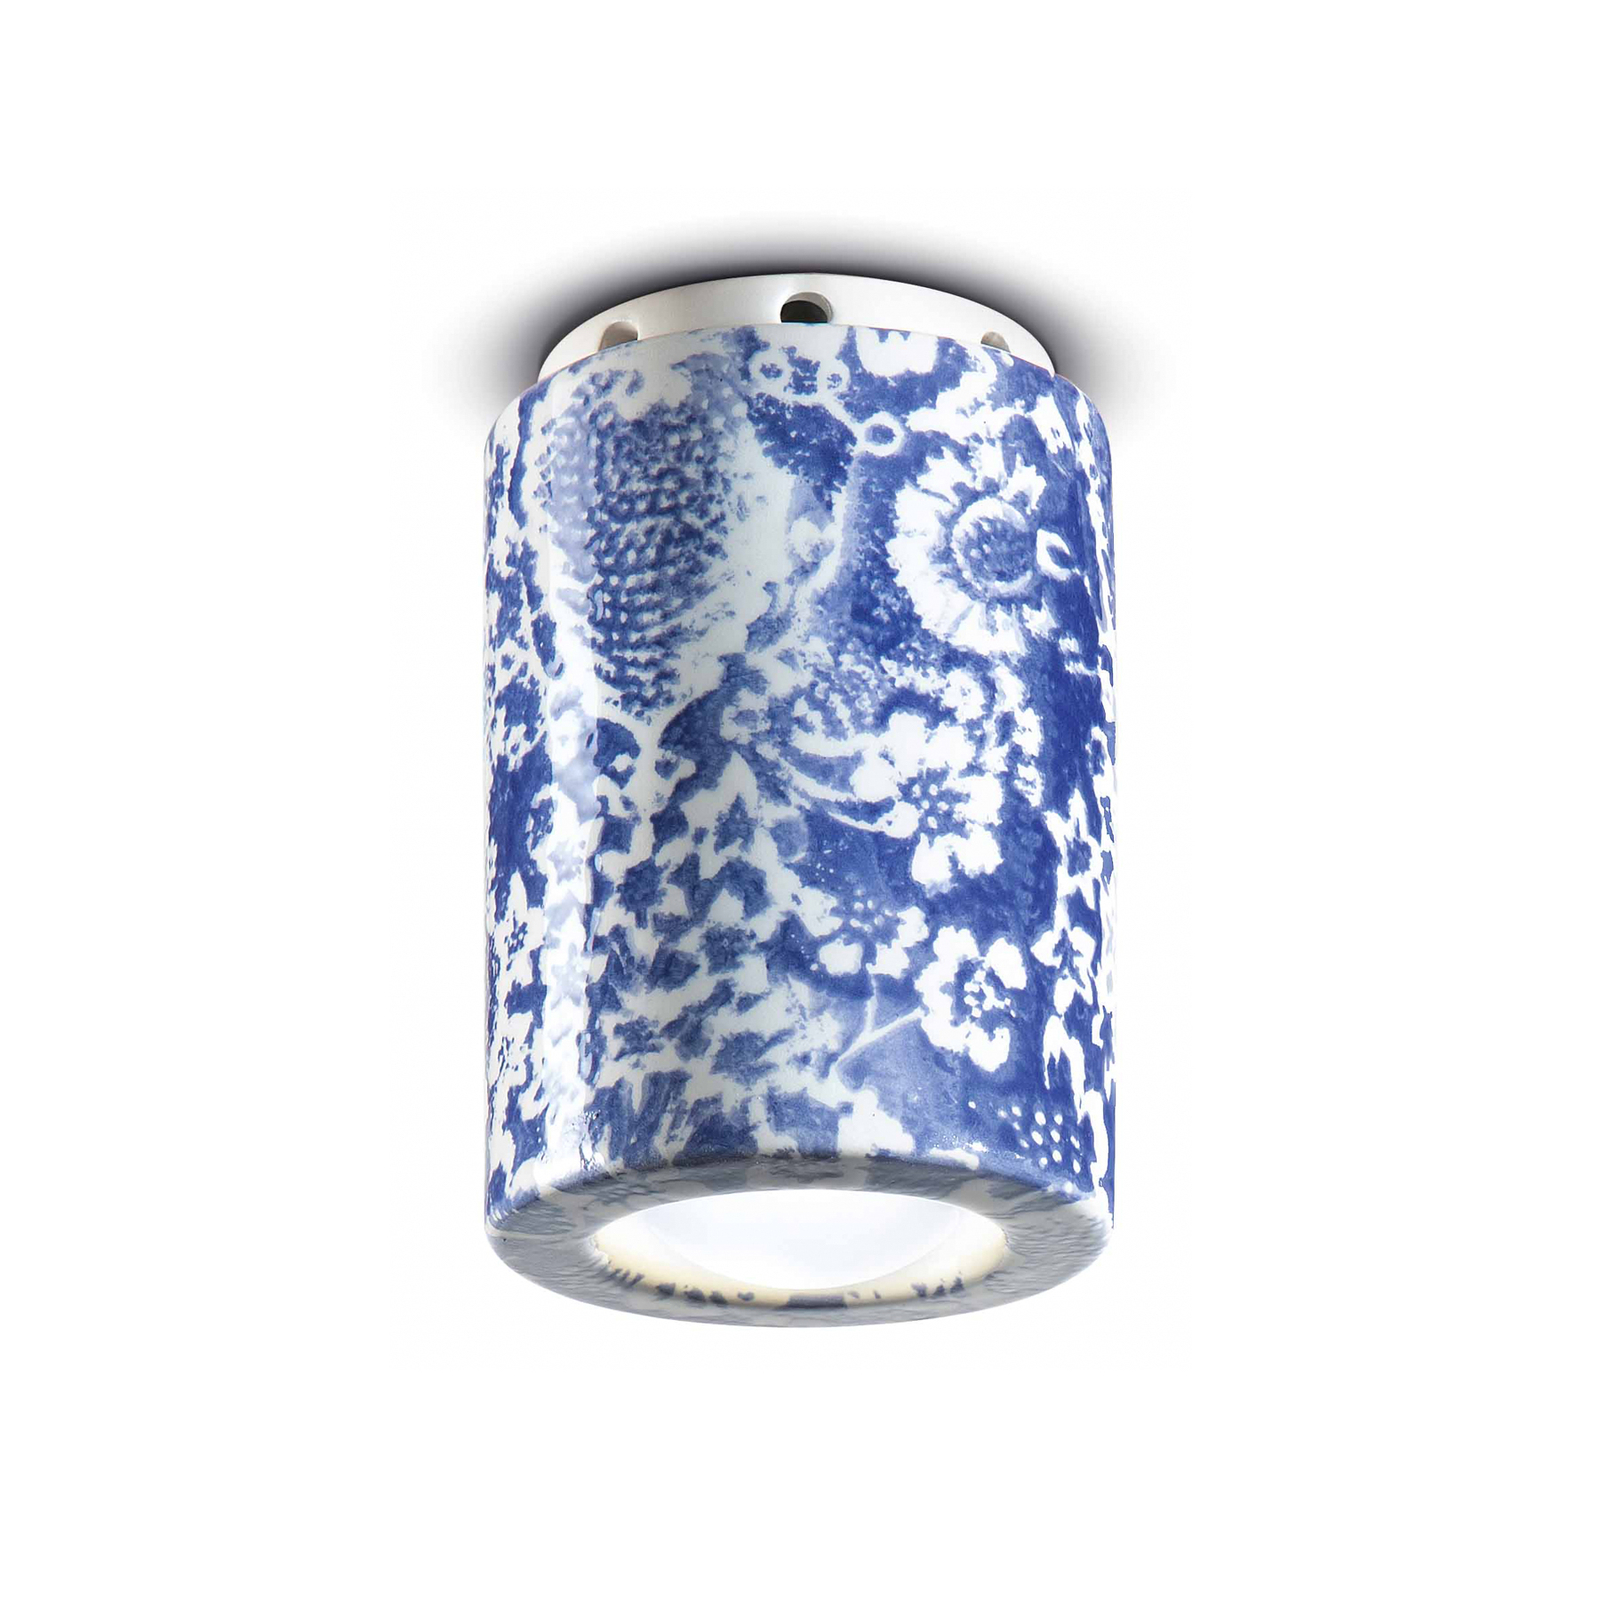 Deckenlampe PI, Blumenmuster, Ø 8,5 cm blau/weiß